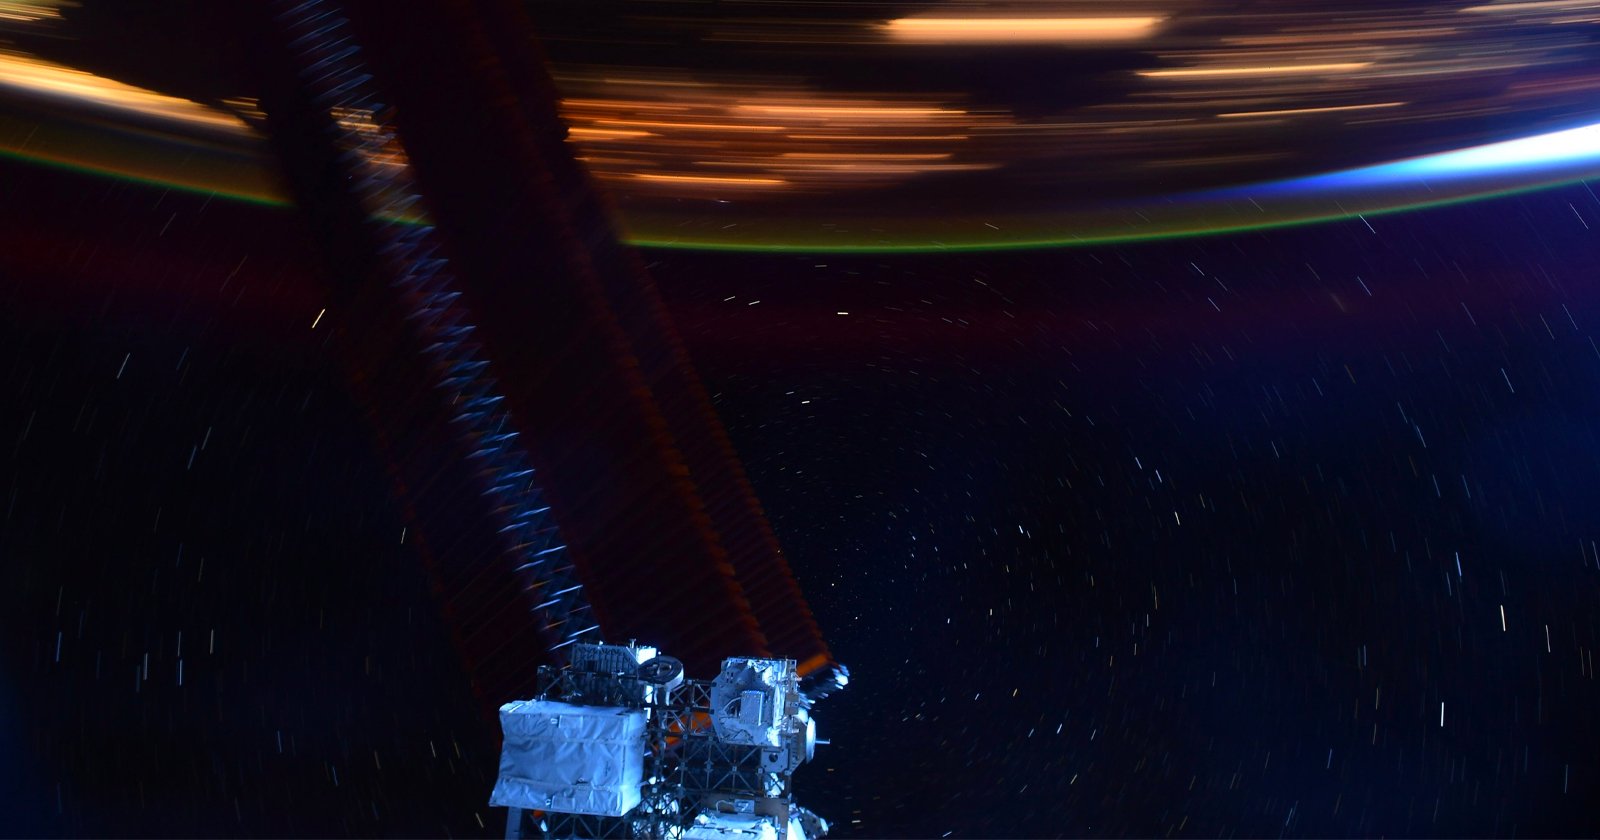 Un’immagine dalla Stazione Spaziale Internazionale che mostra la velocità con cui si muove la stazione spaziale